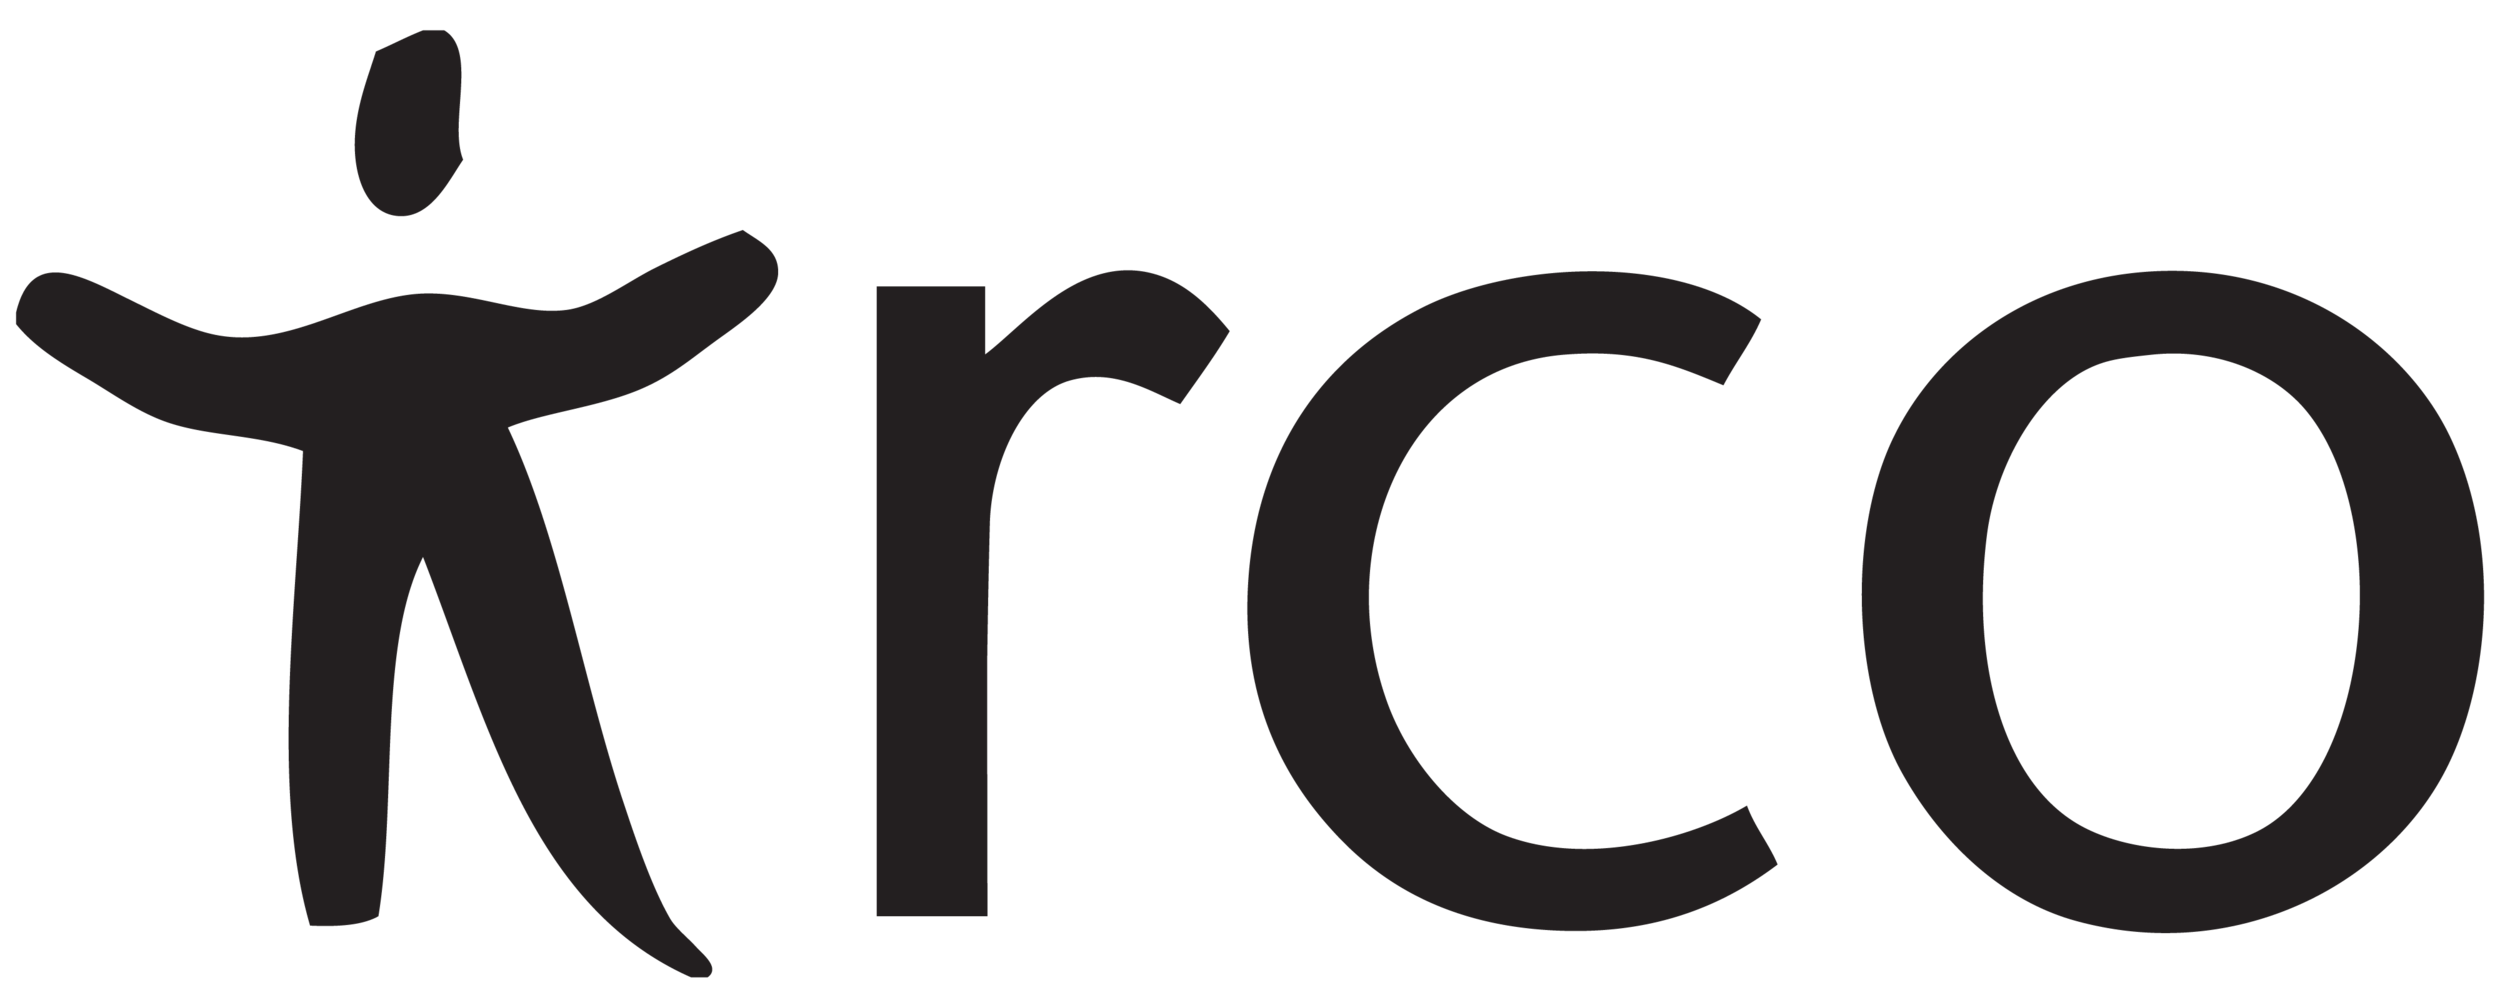 irco-littleguy-logo.png